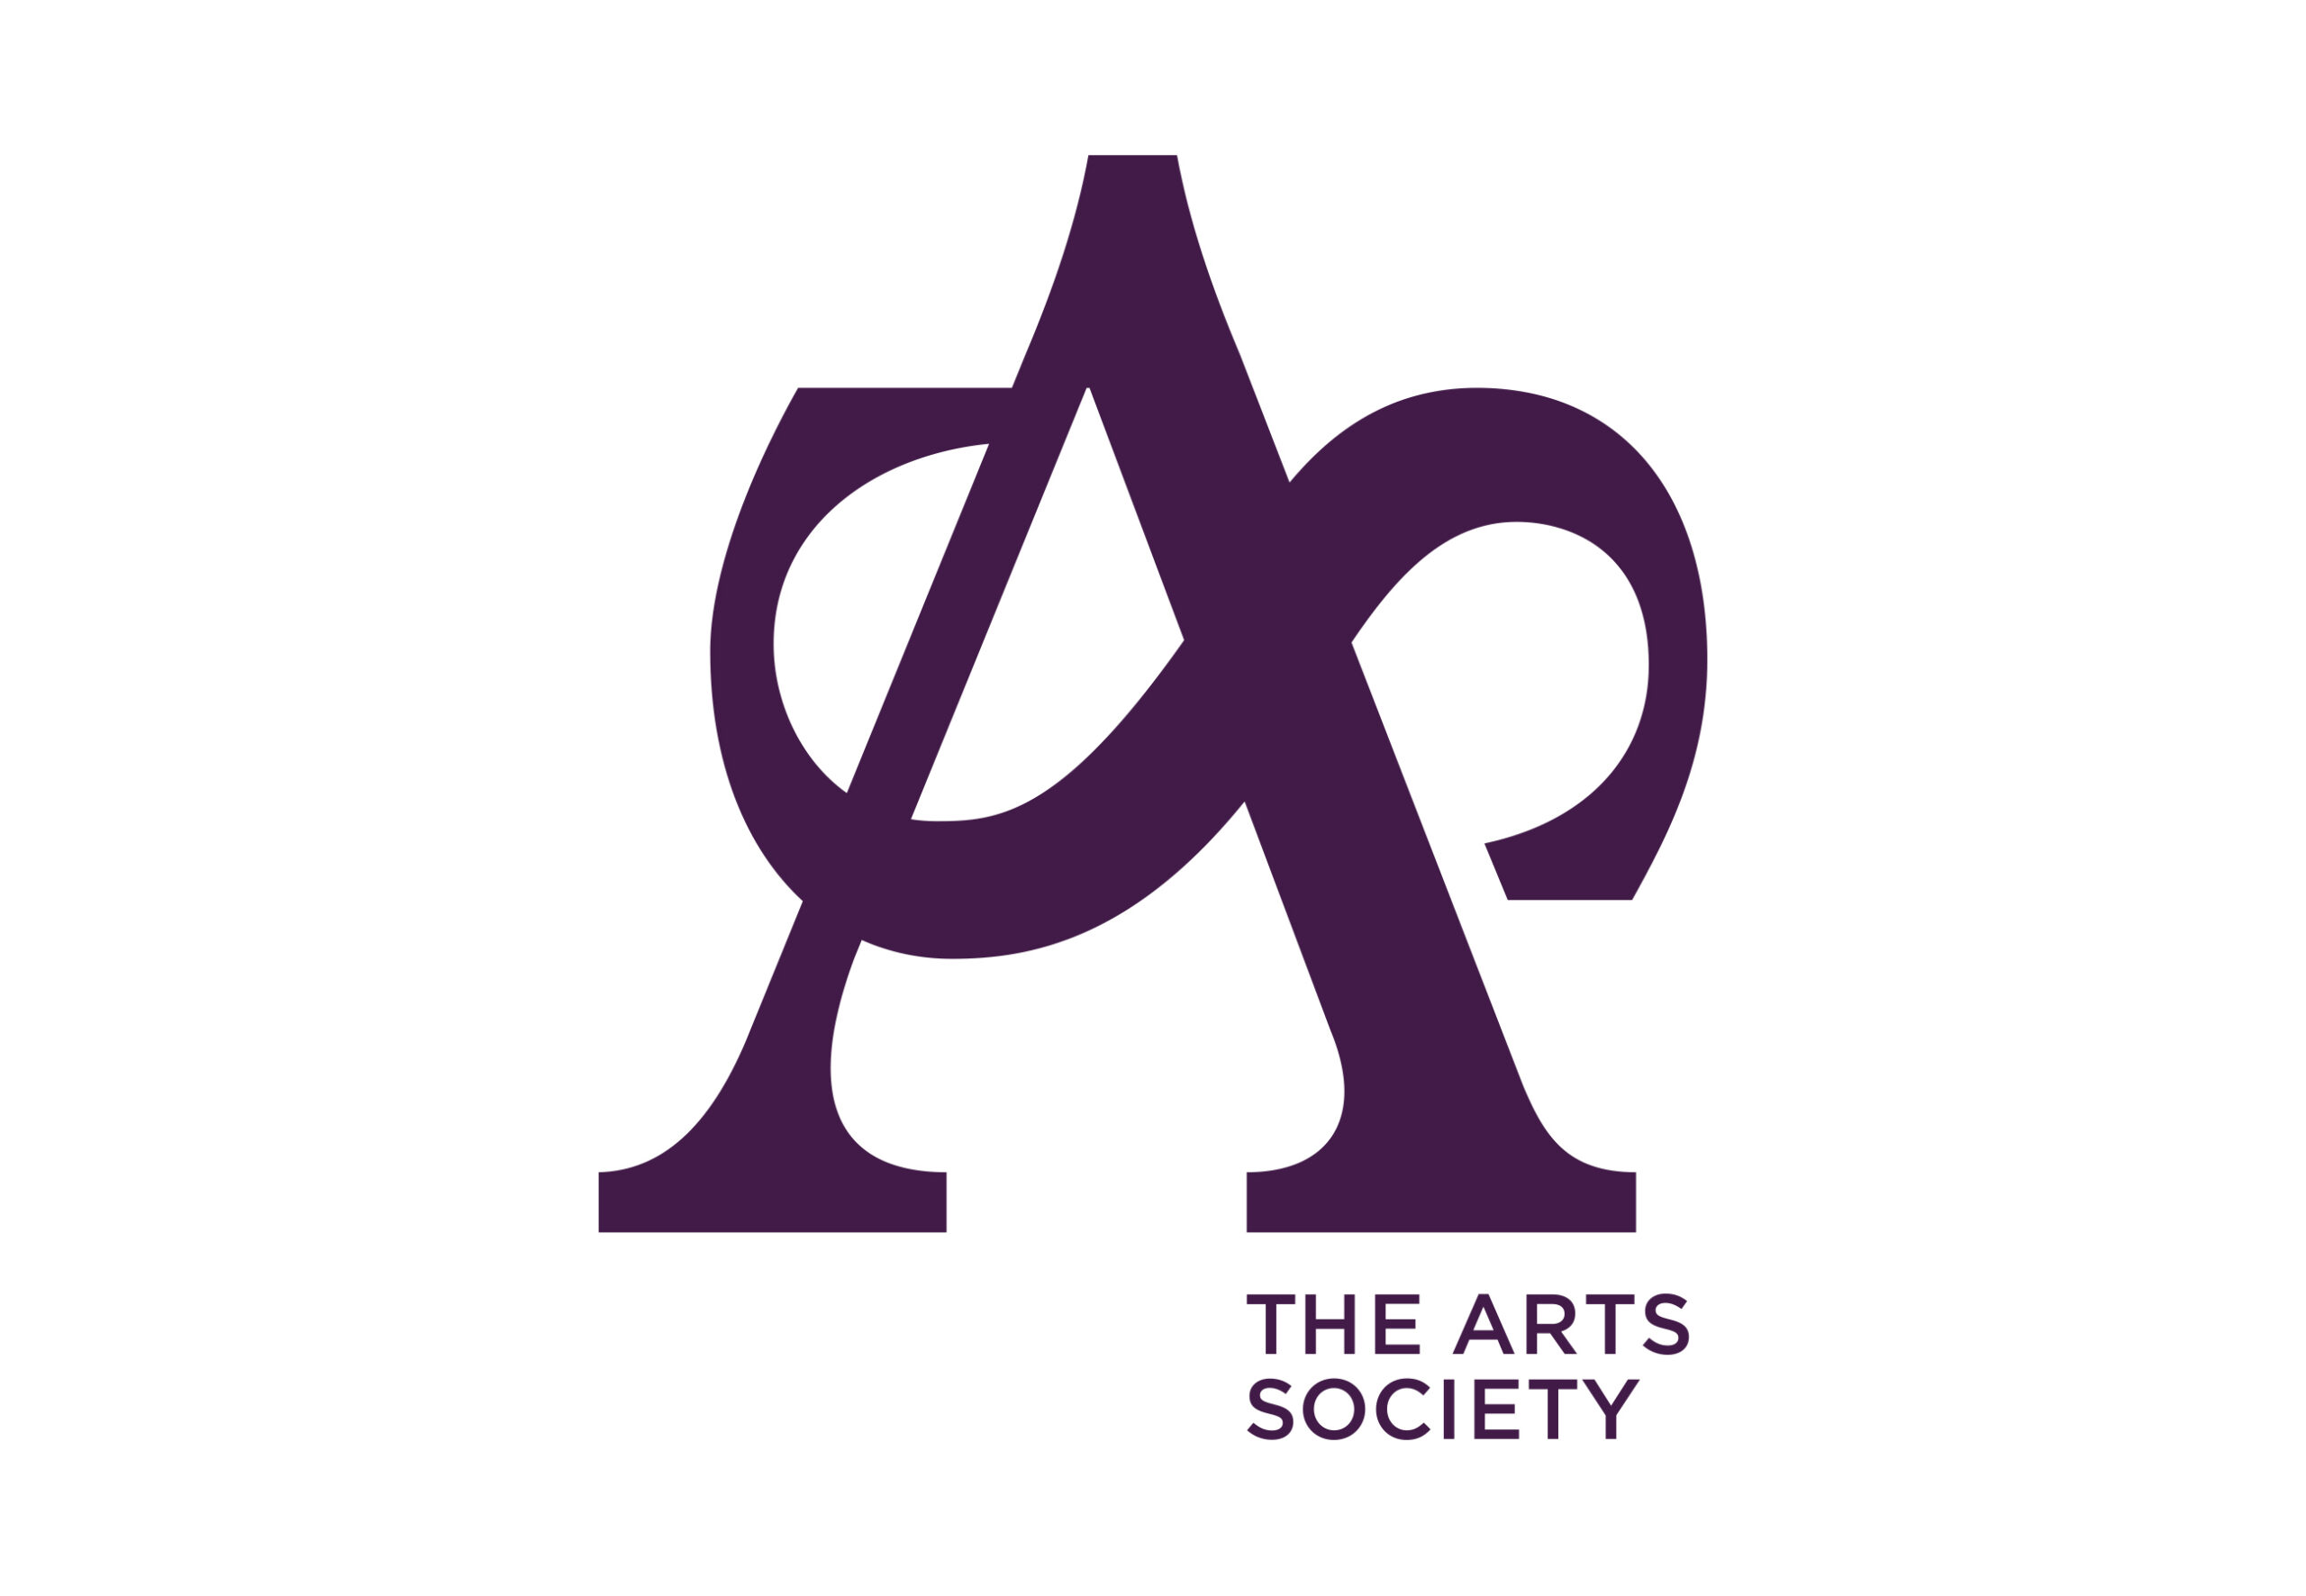 The Arts Society logo science of art